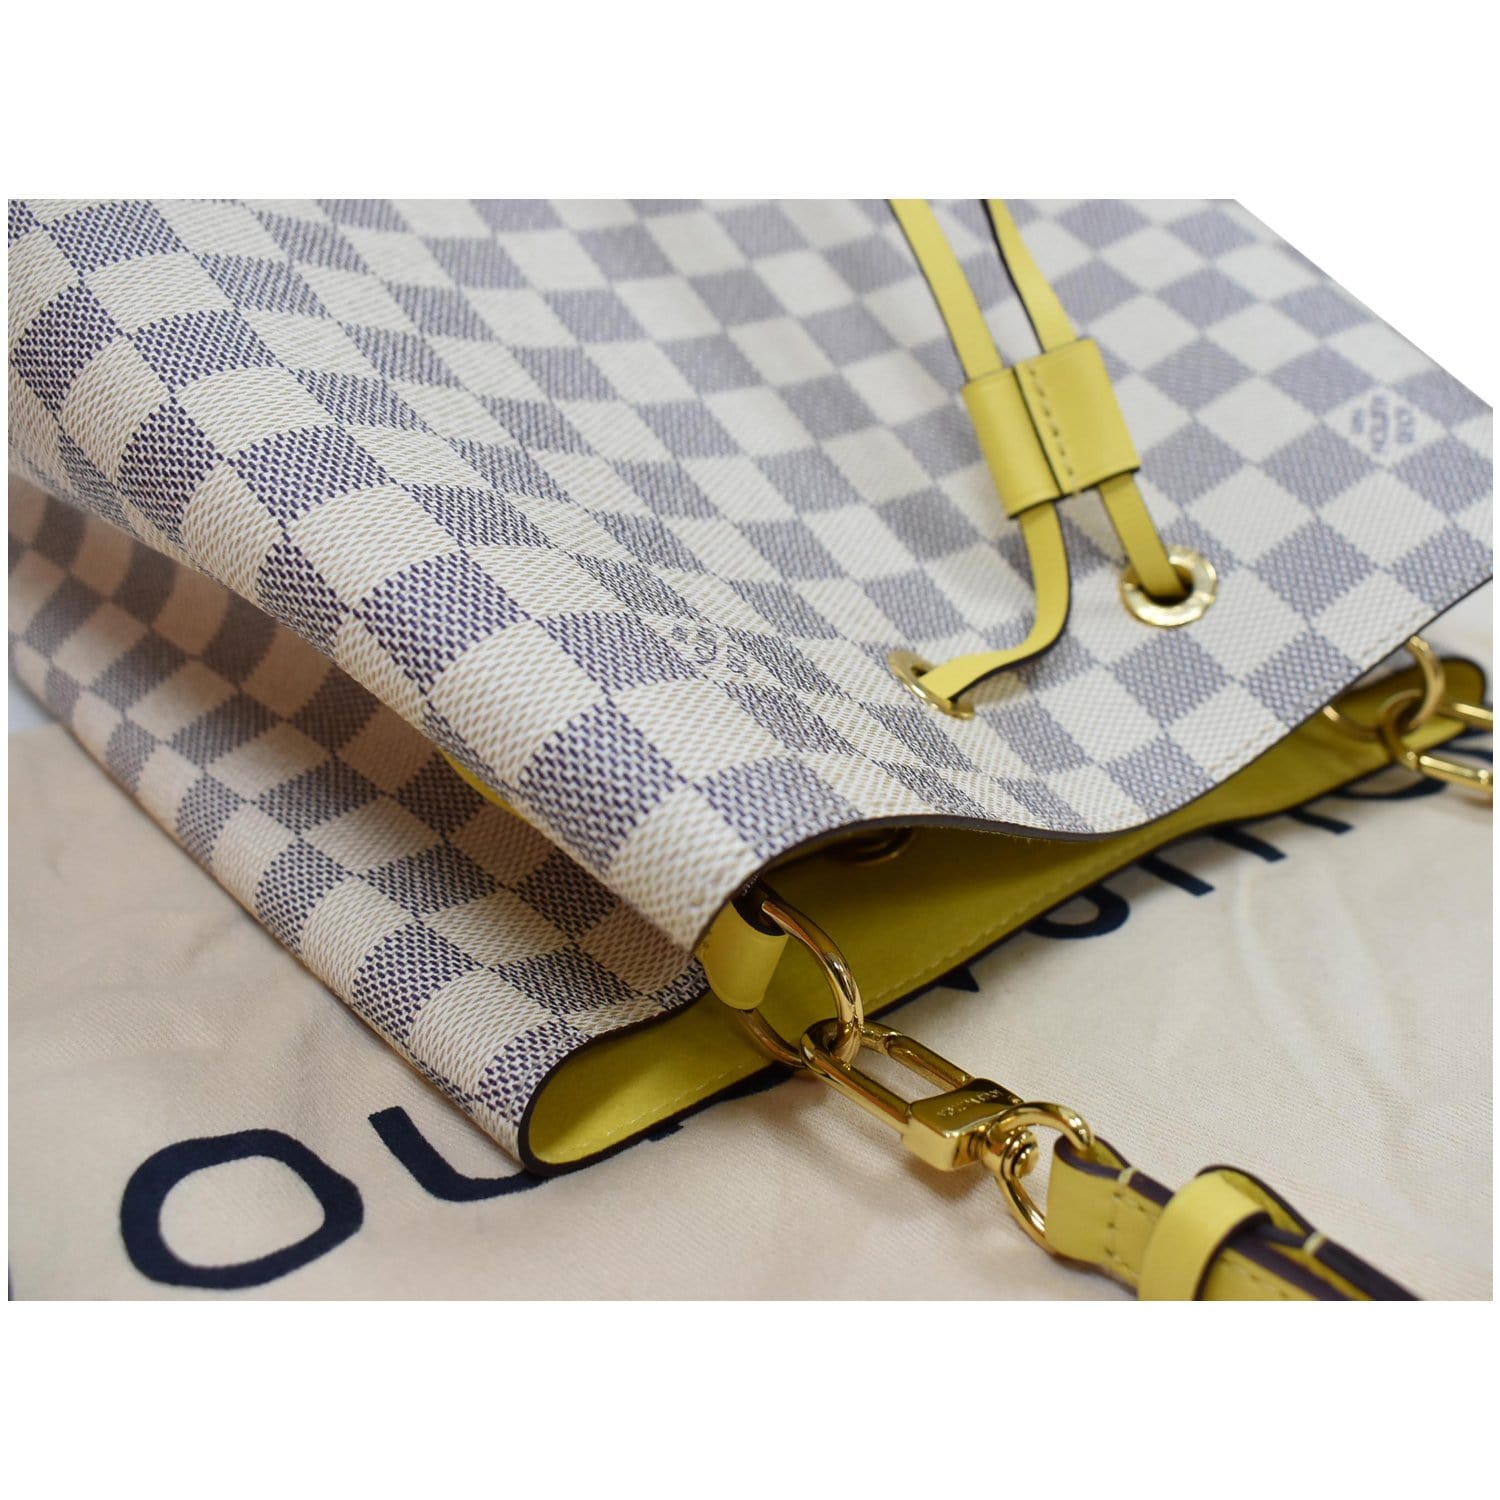 Authentic Louis Vuitton Damier Azur NeoNoe MM Shoulder Bag